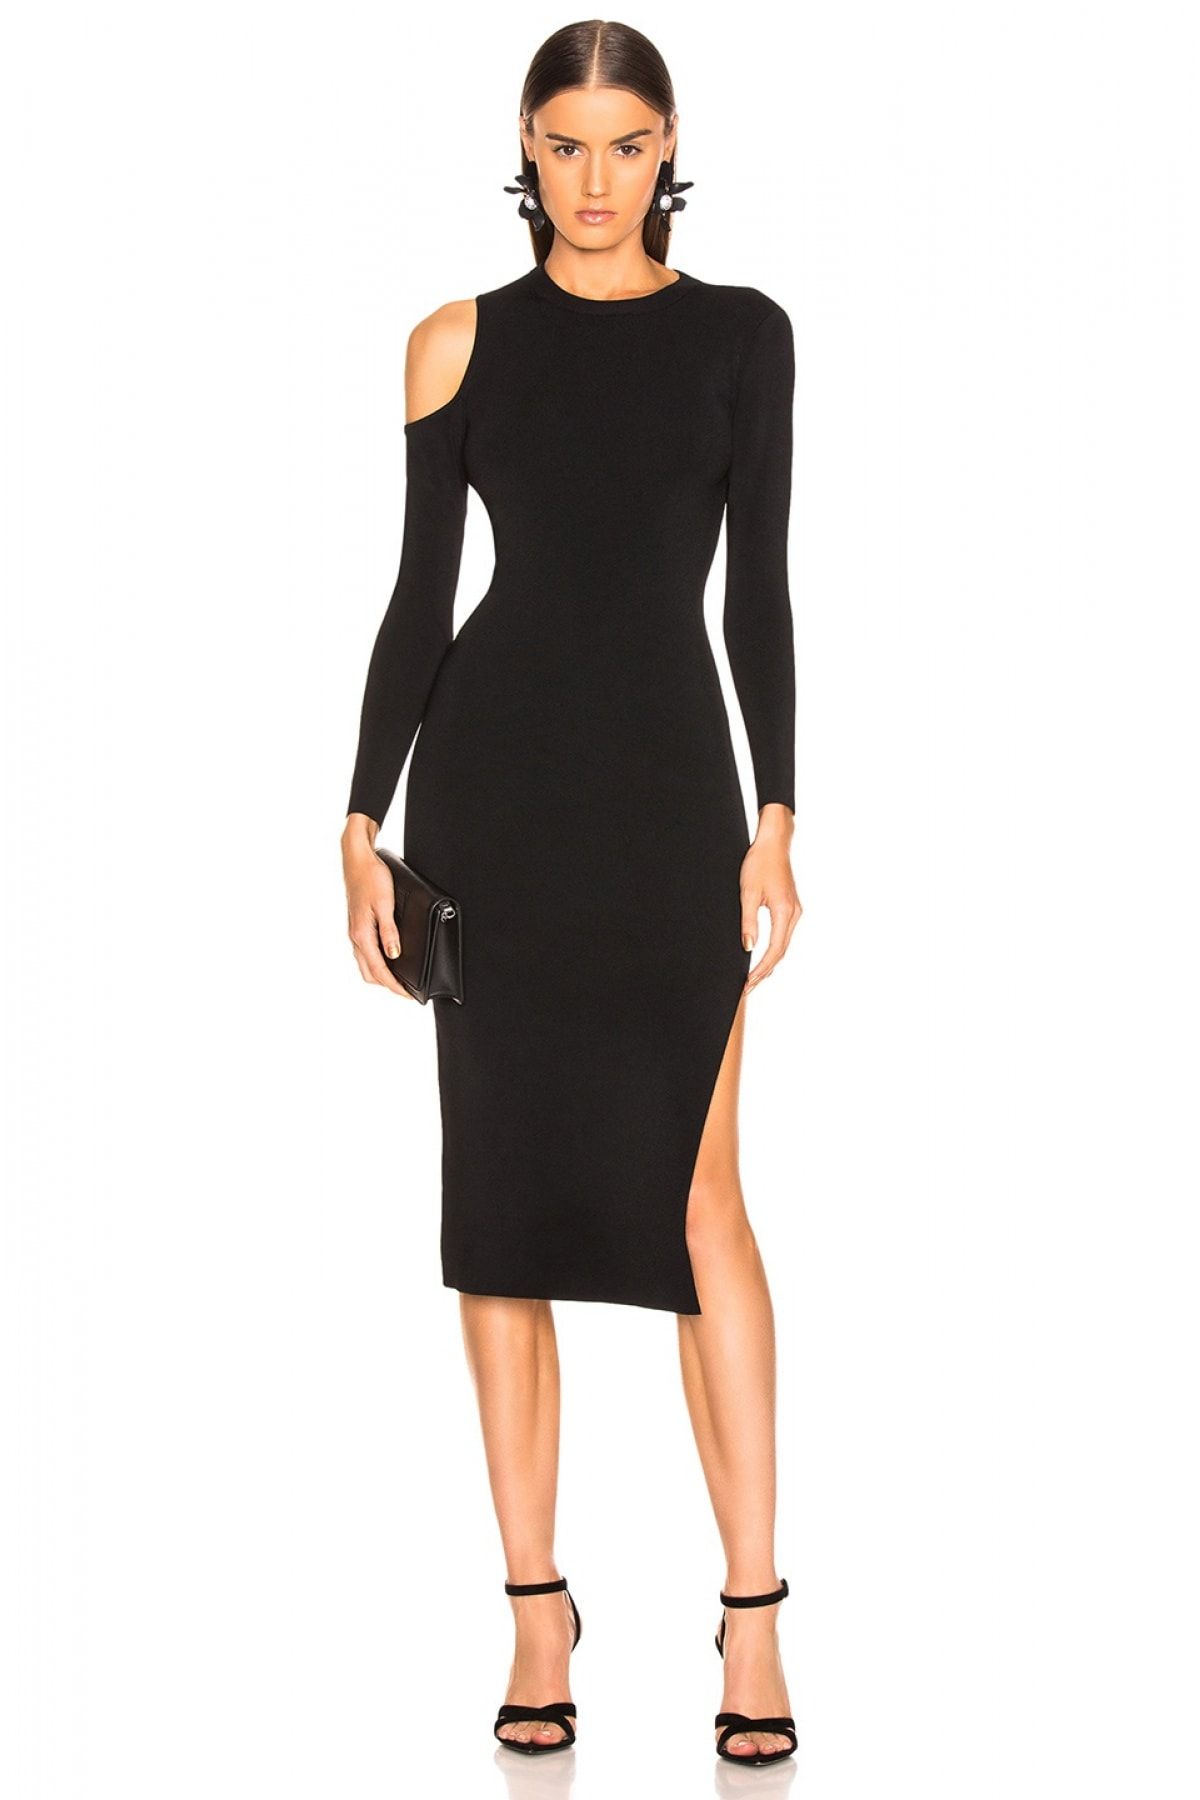 By Umut Design Kadın Siyah Omuz Detaylı Yırtmaçlı Elbise 4500610